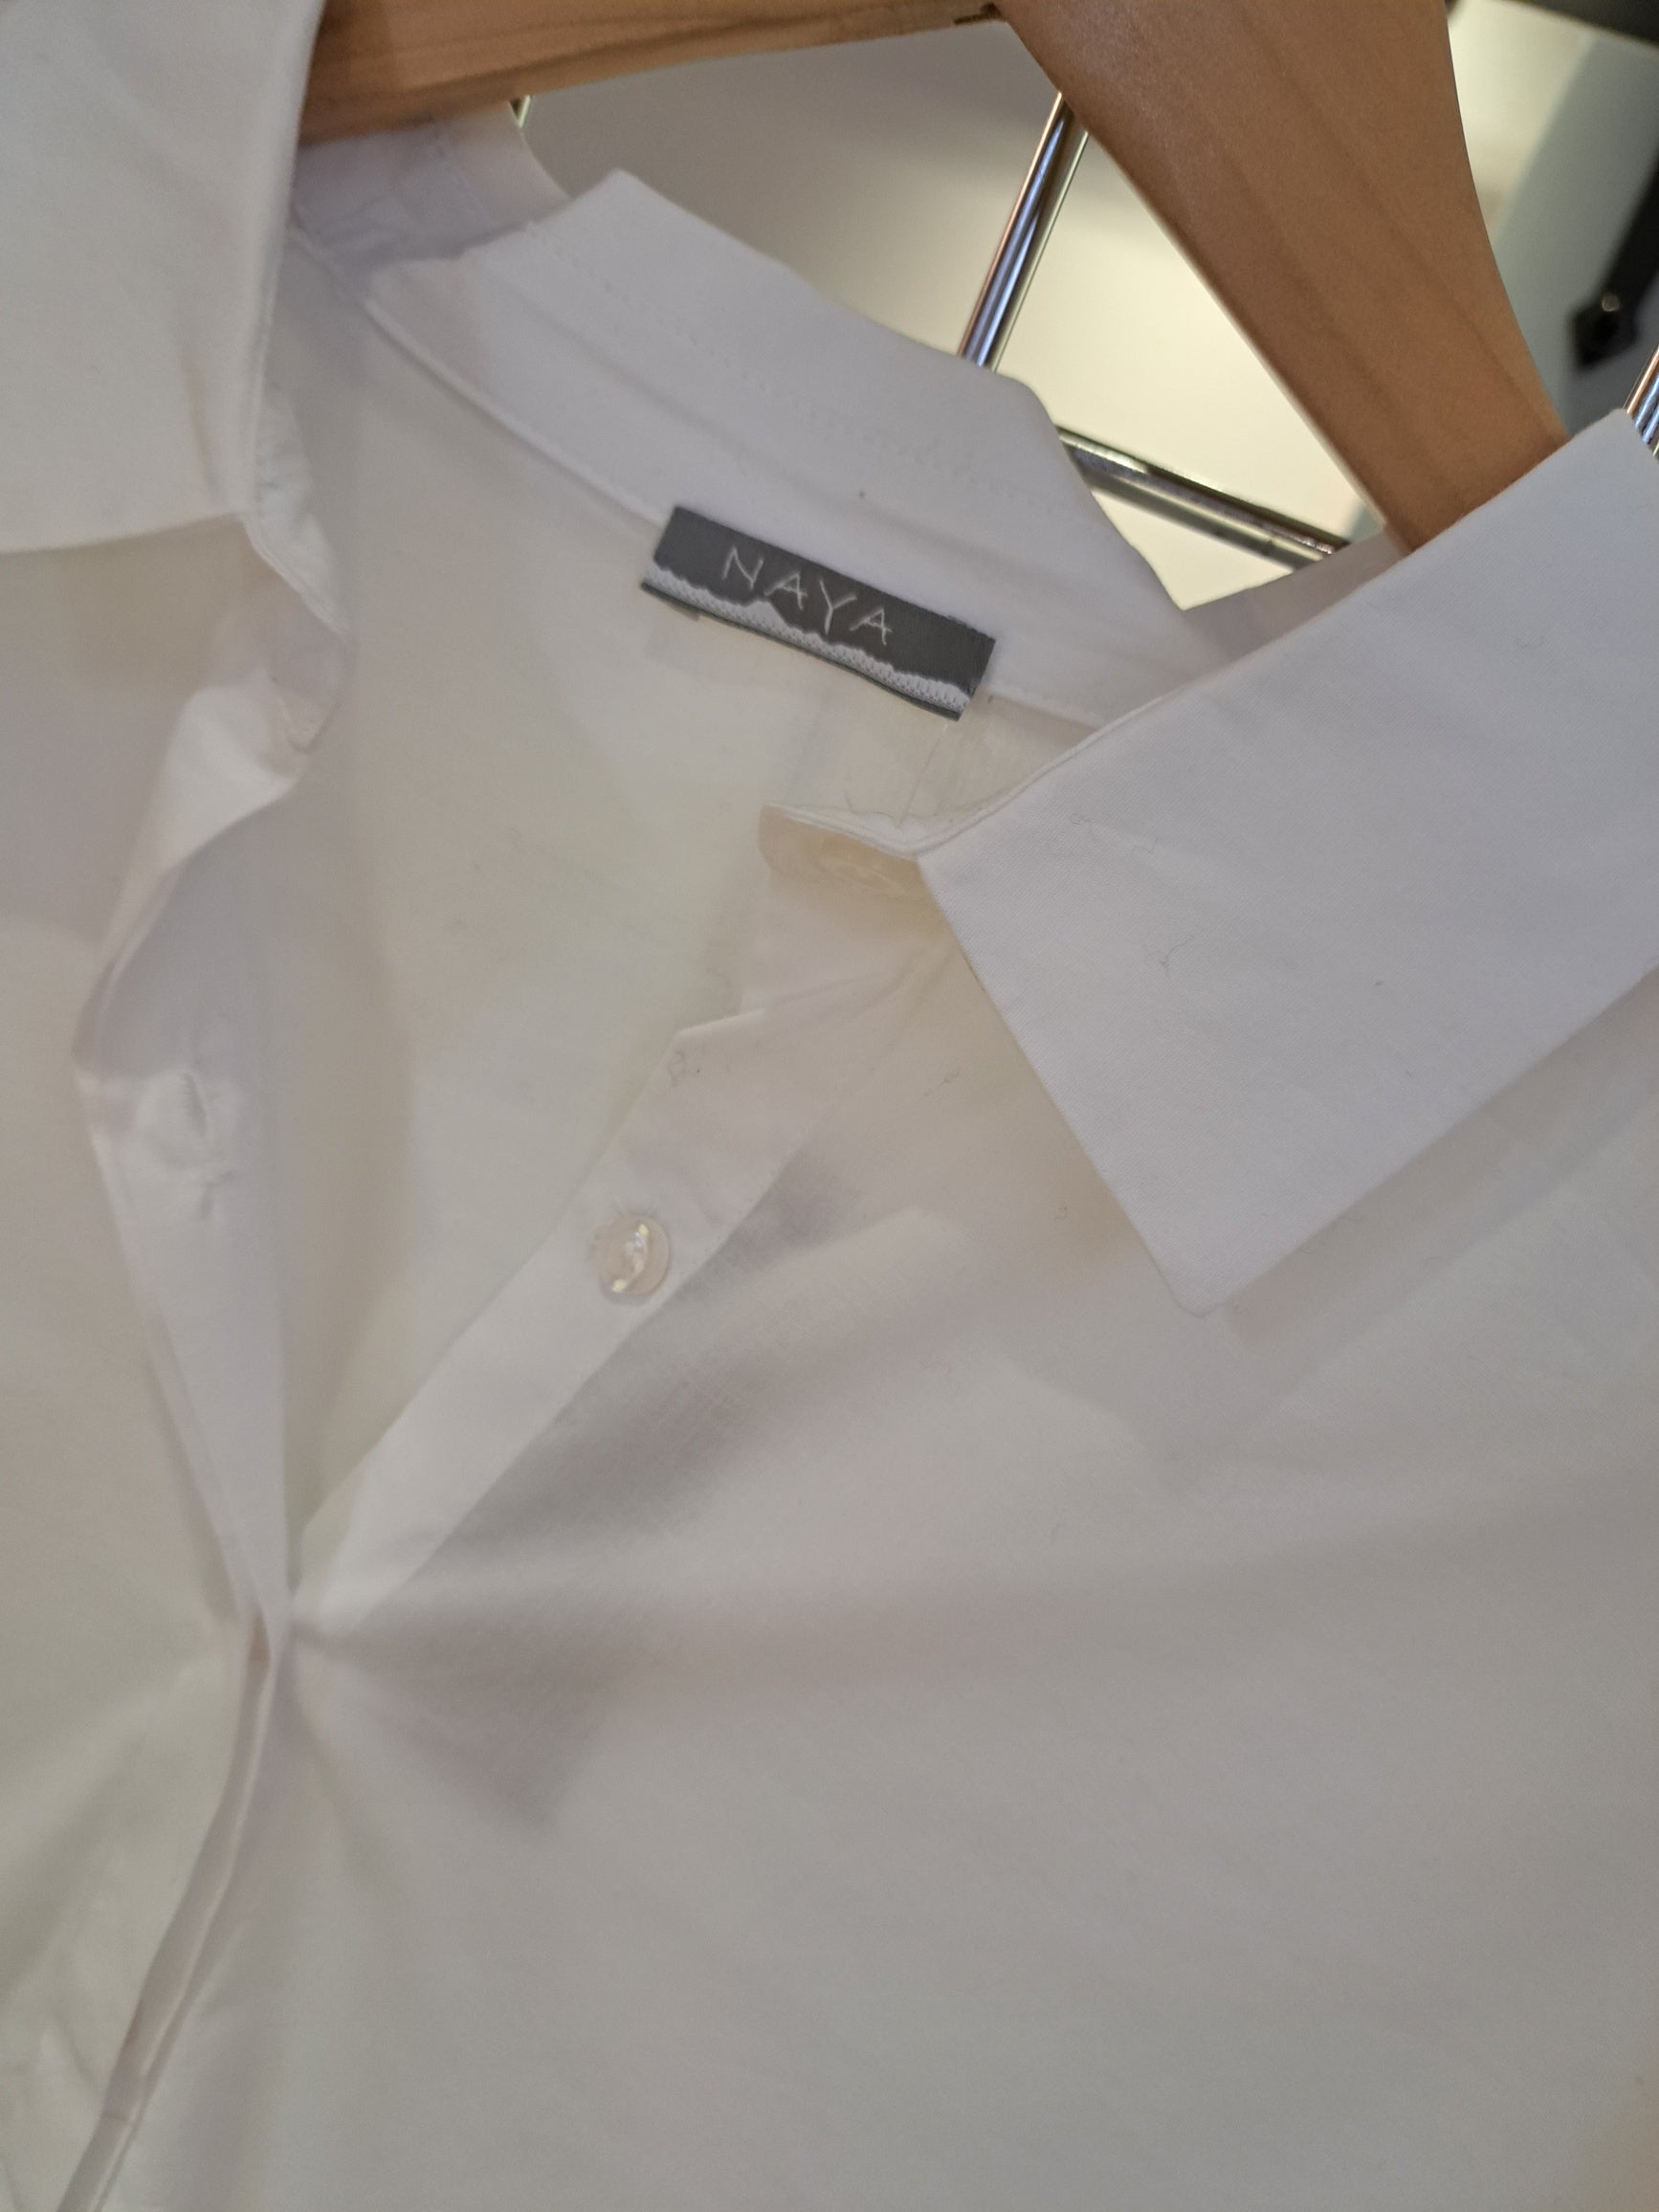 Naya white jersey/cotton shirt - Maya Maya Ltd